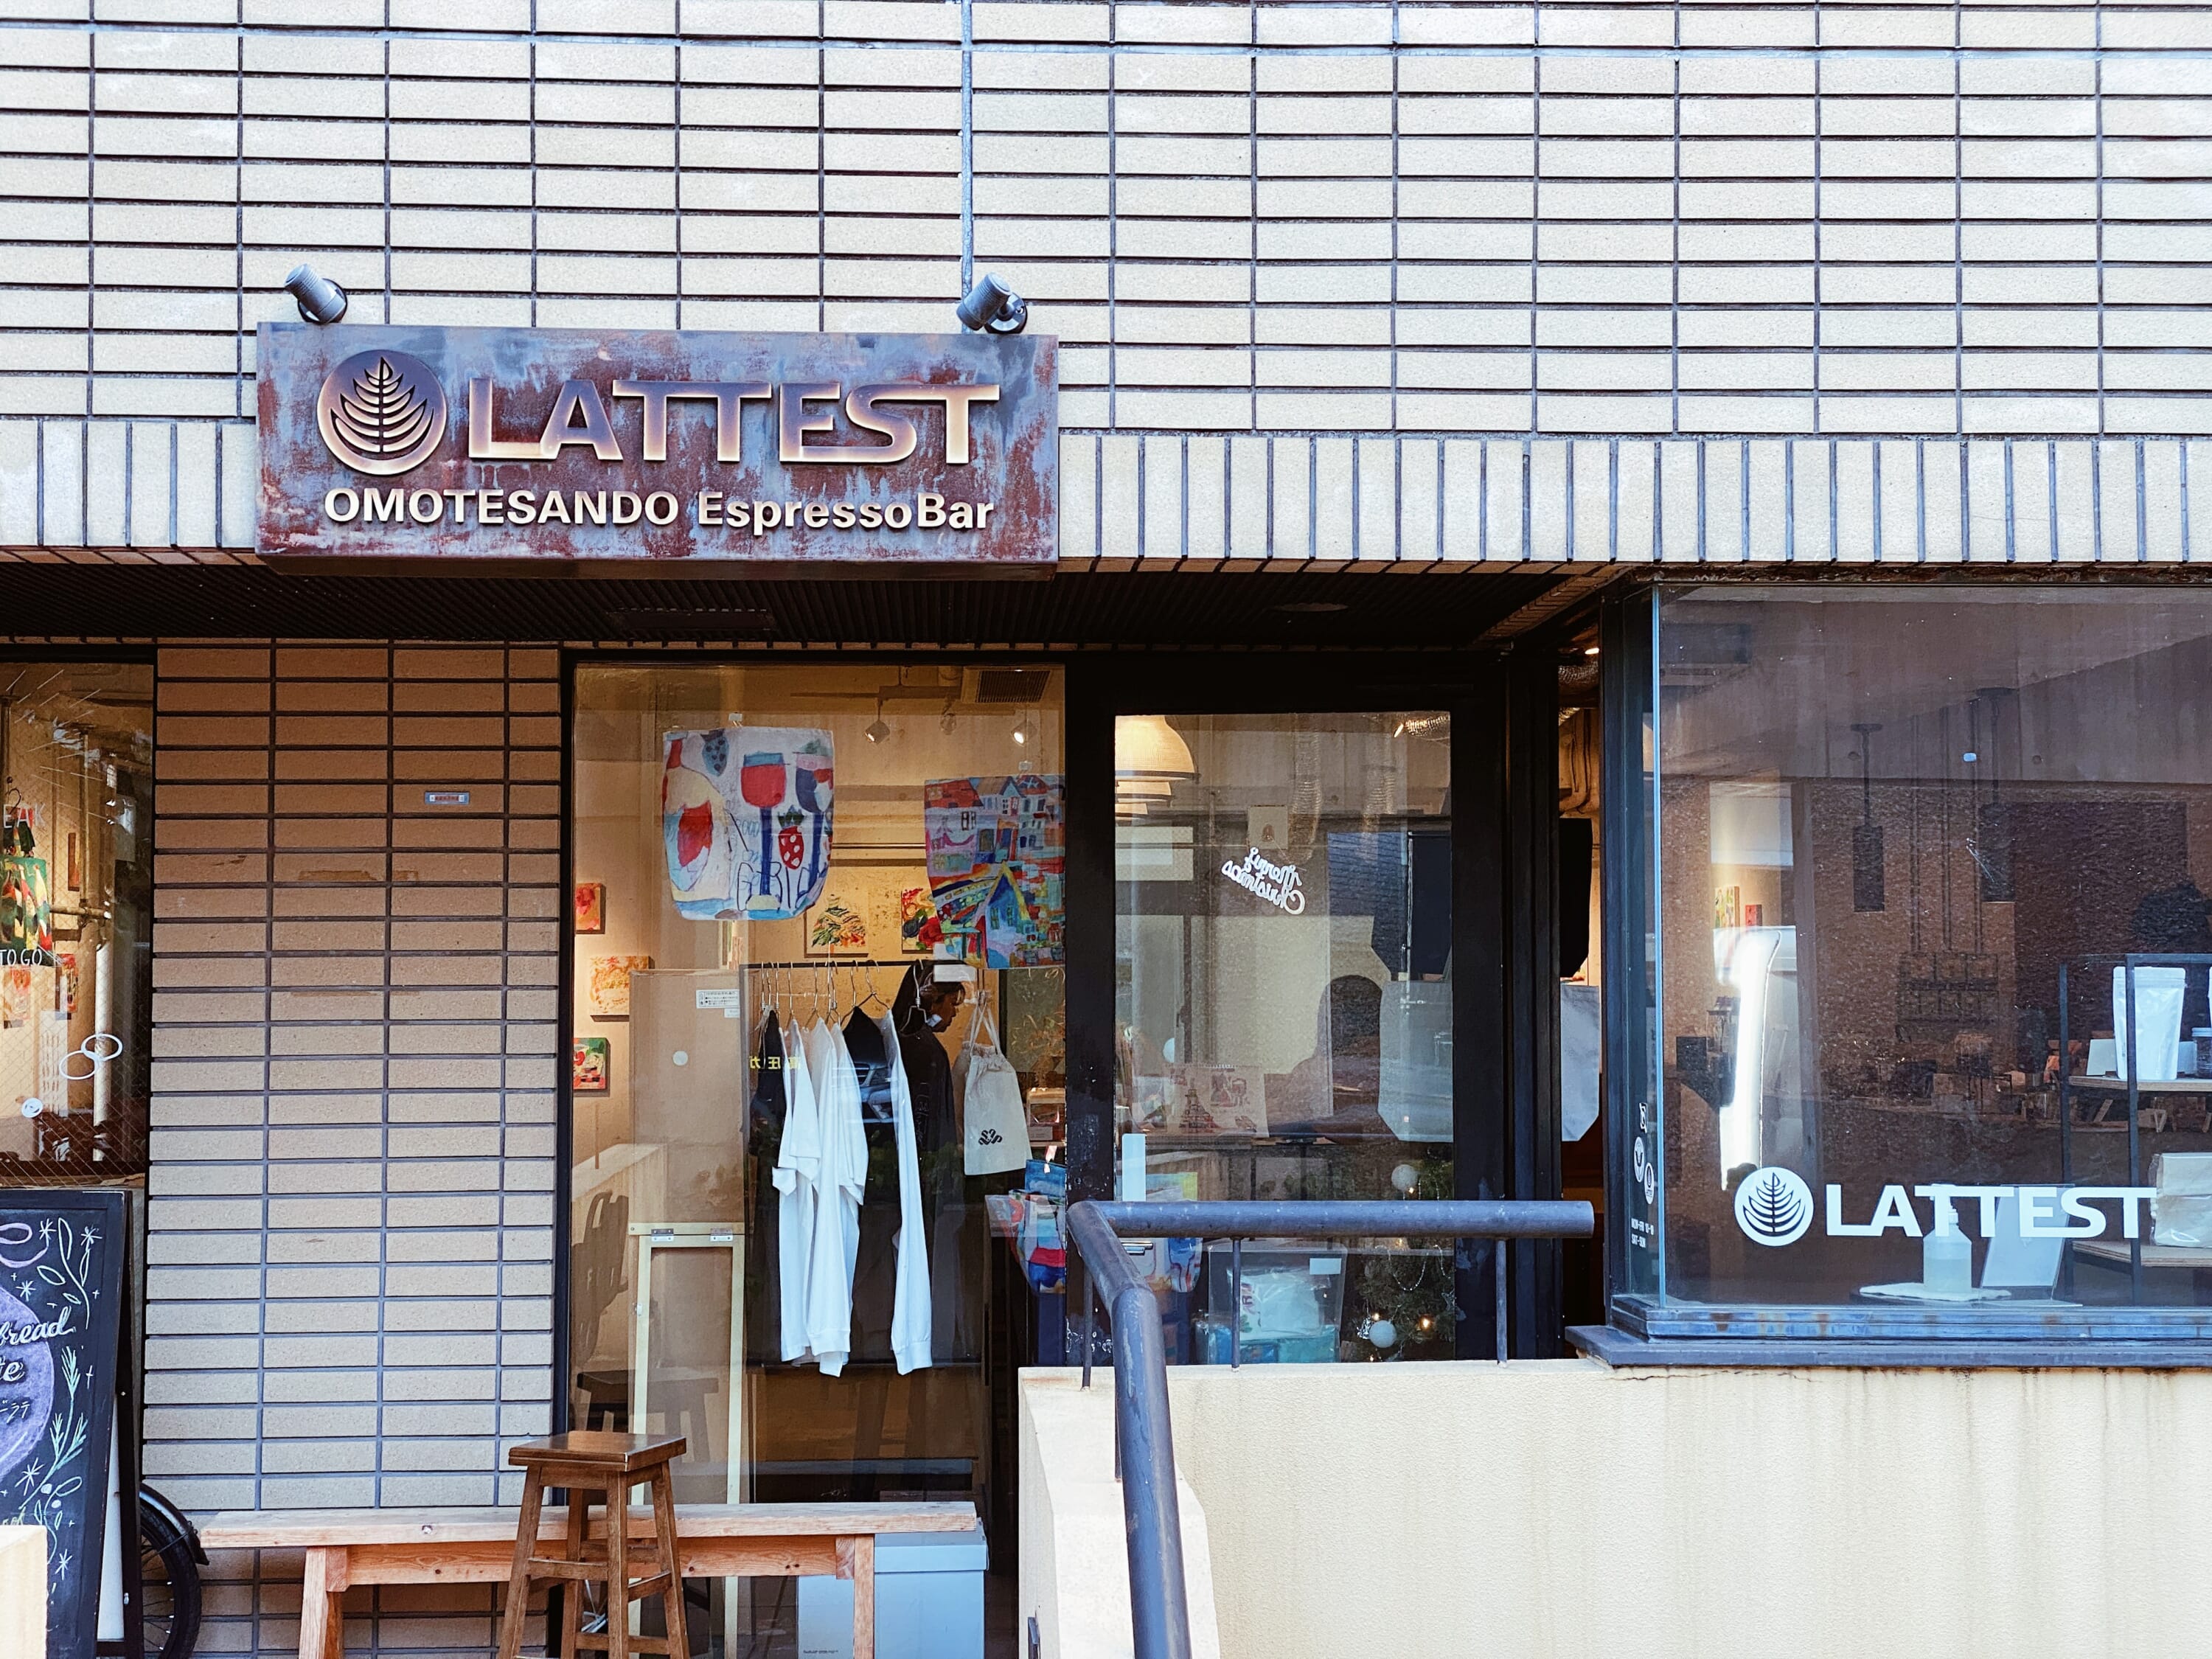 Best cafes to visit in Omotesando, Tokyo